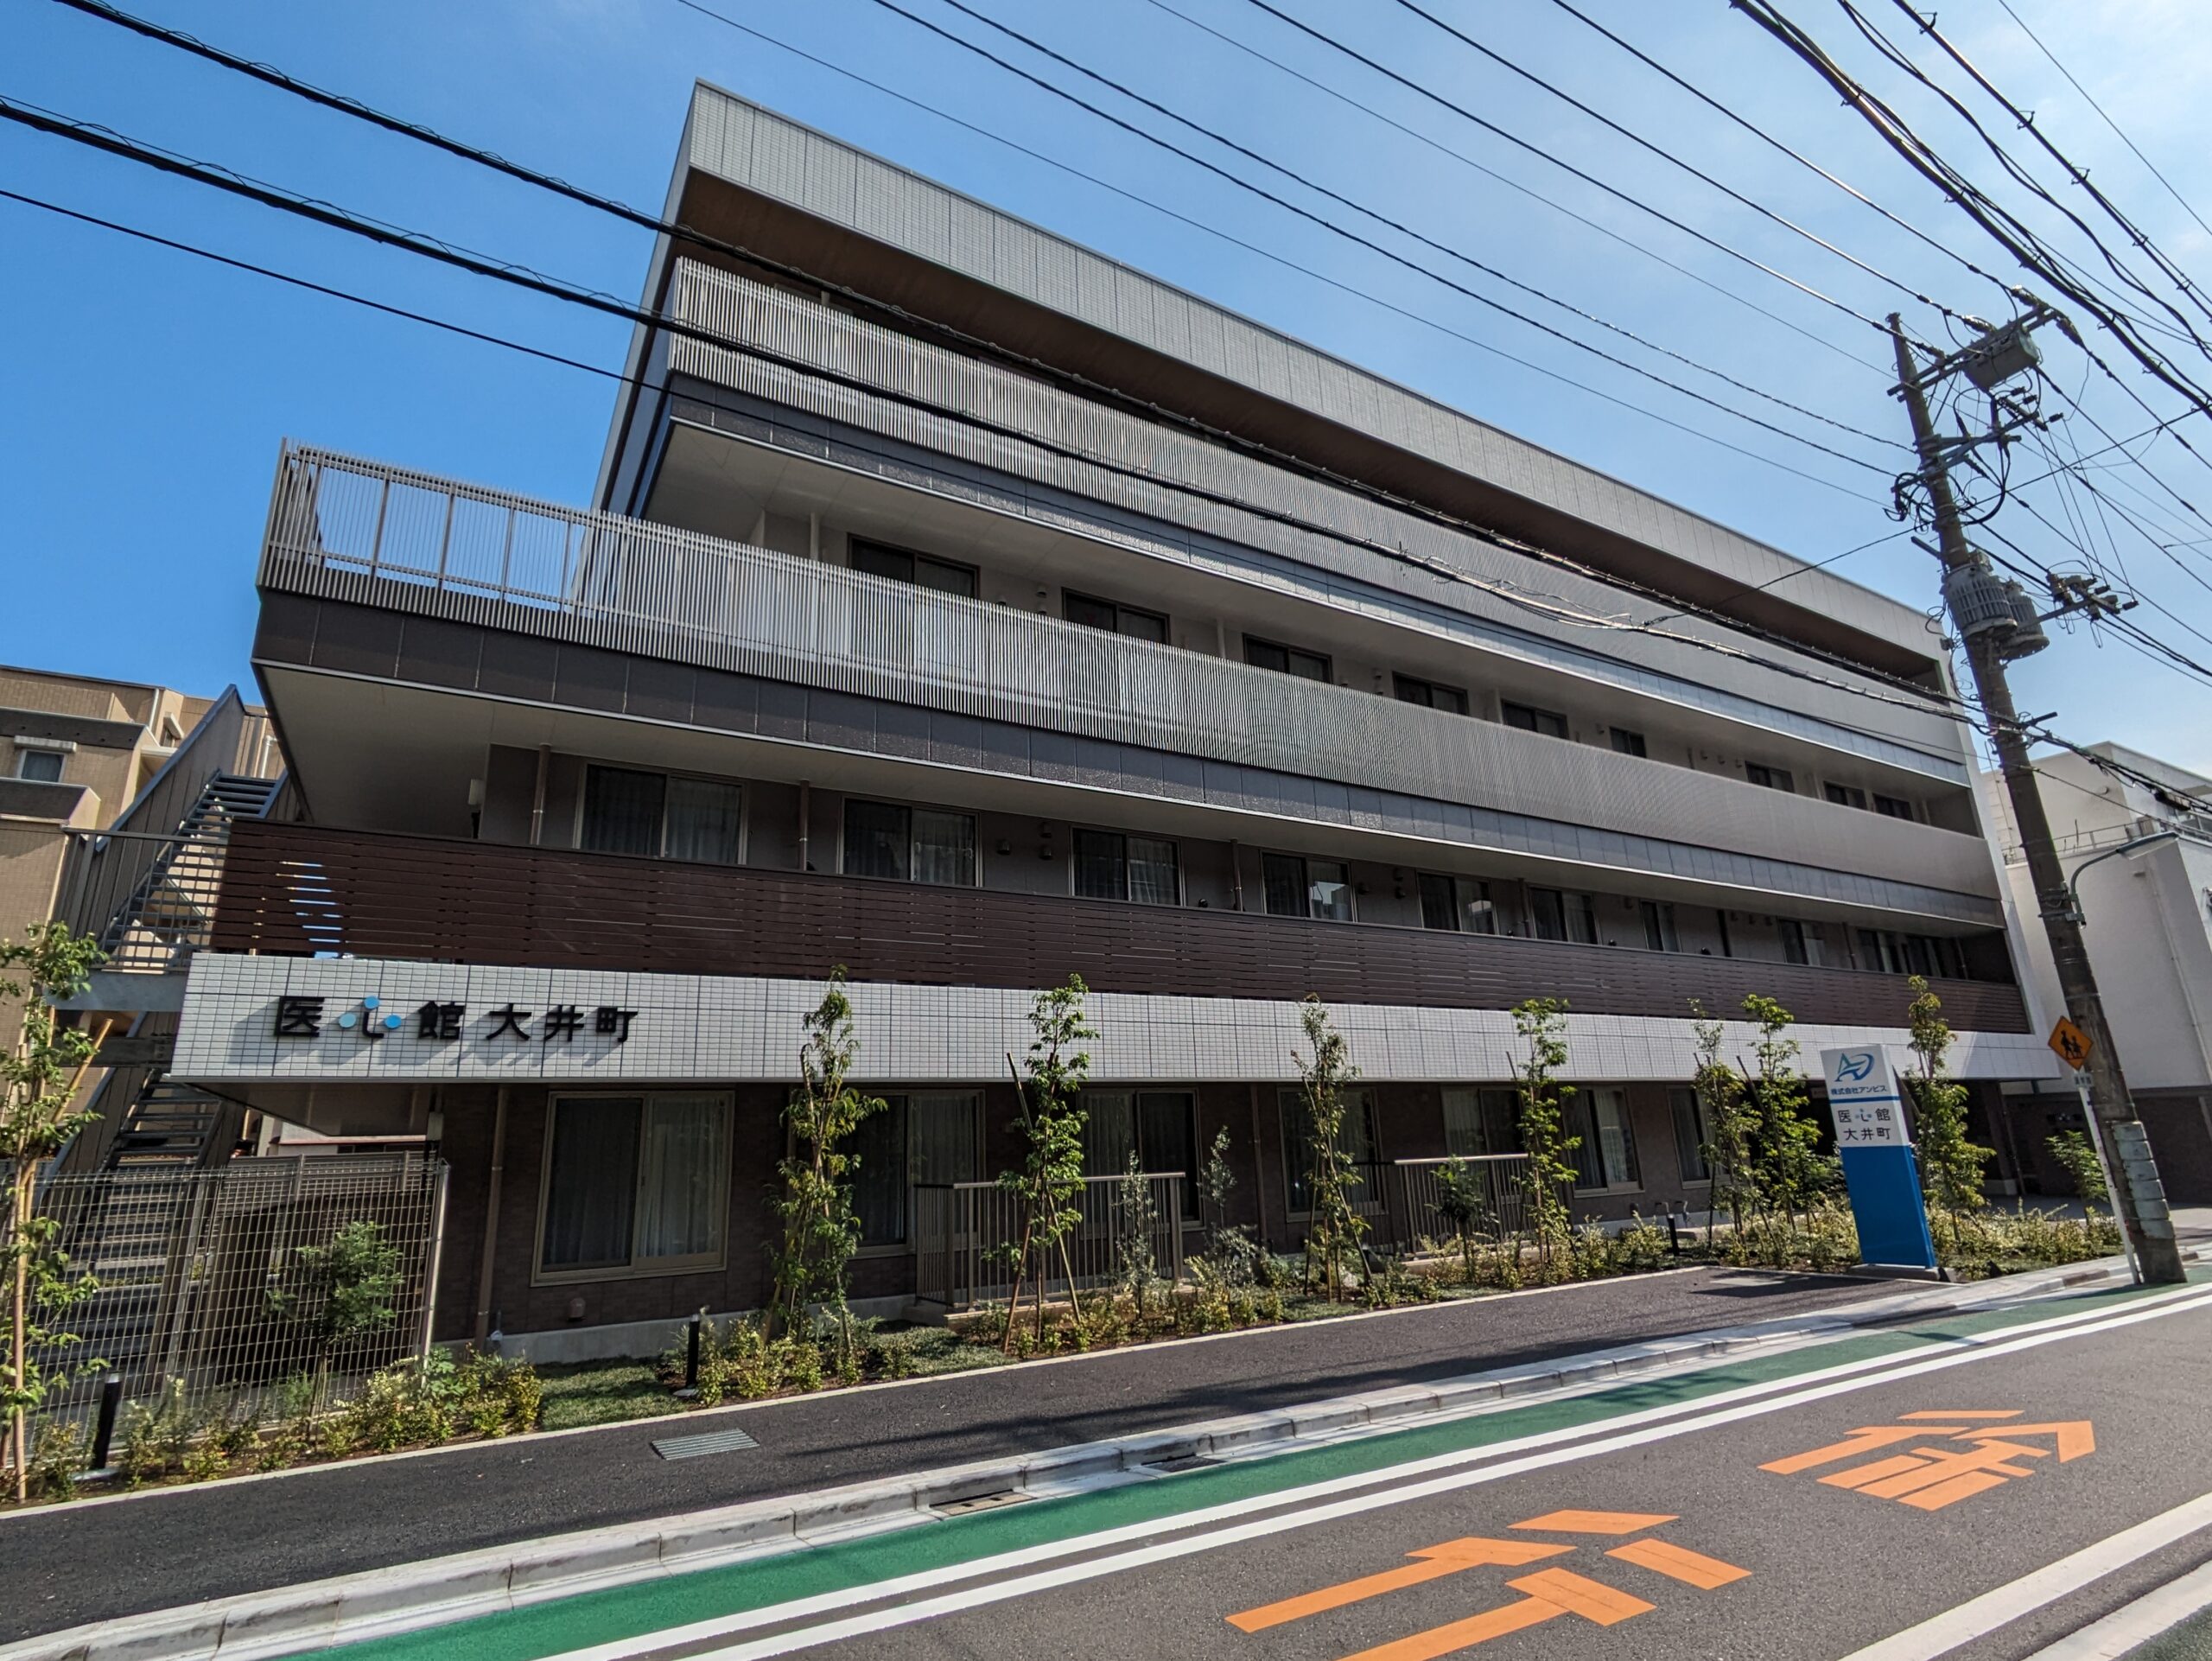 東京都では９施設目となる 有料老人ホーム「医心館 大井町」をオープンしました